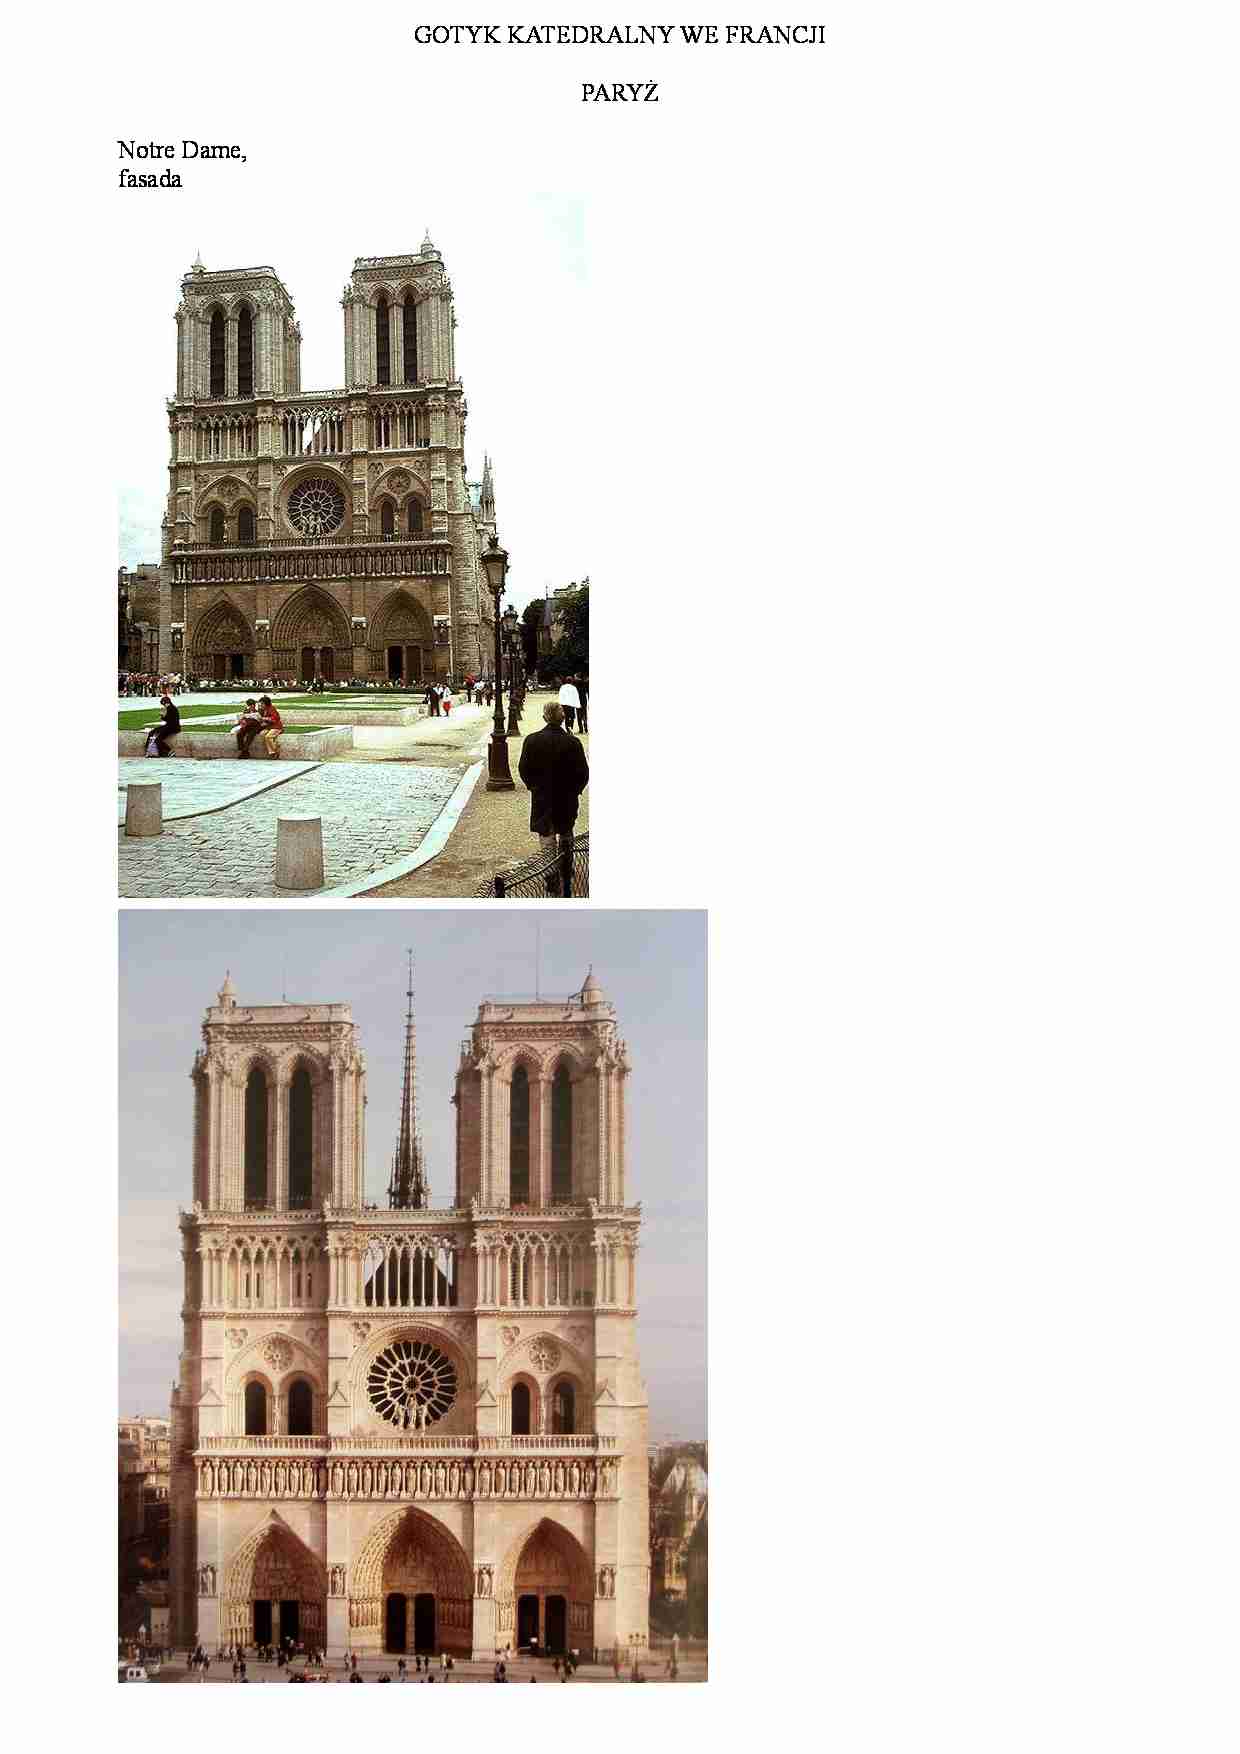 Gotyk katedralny we Francji-Paryż - strona 1